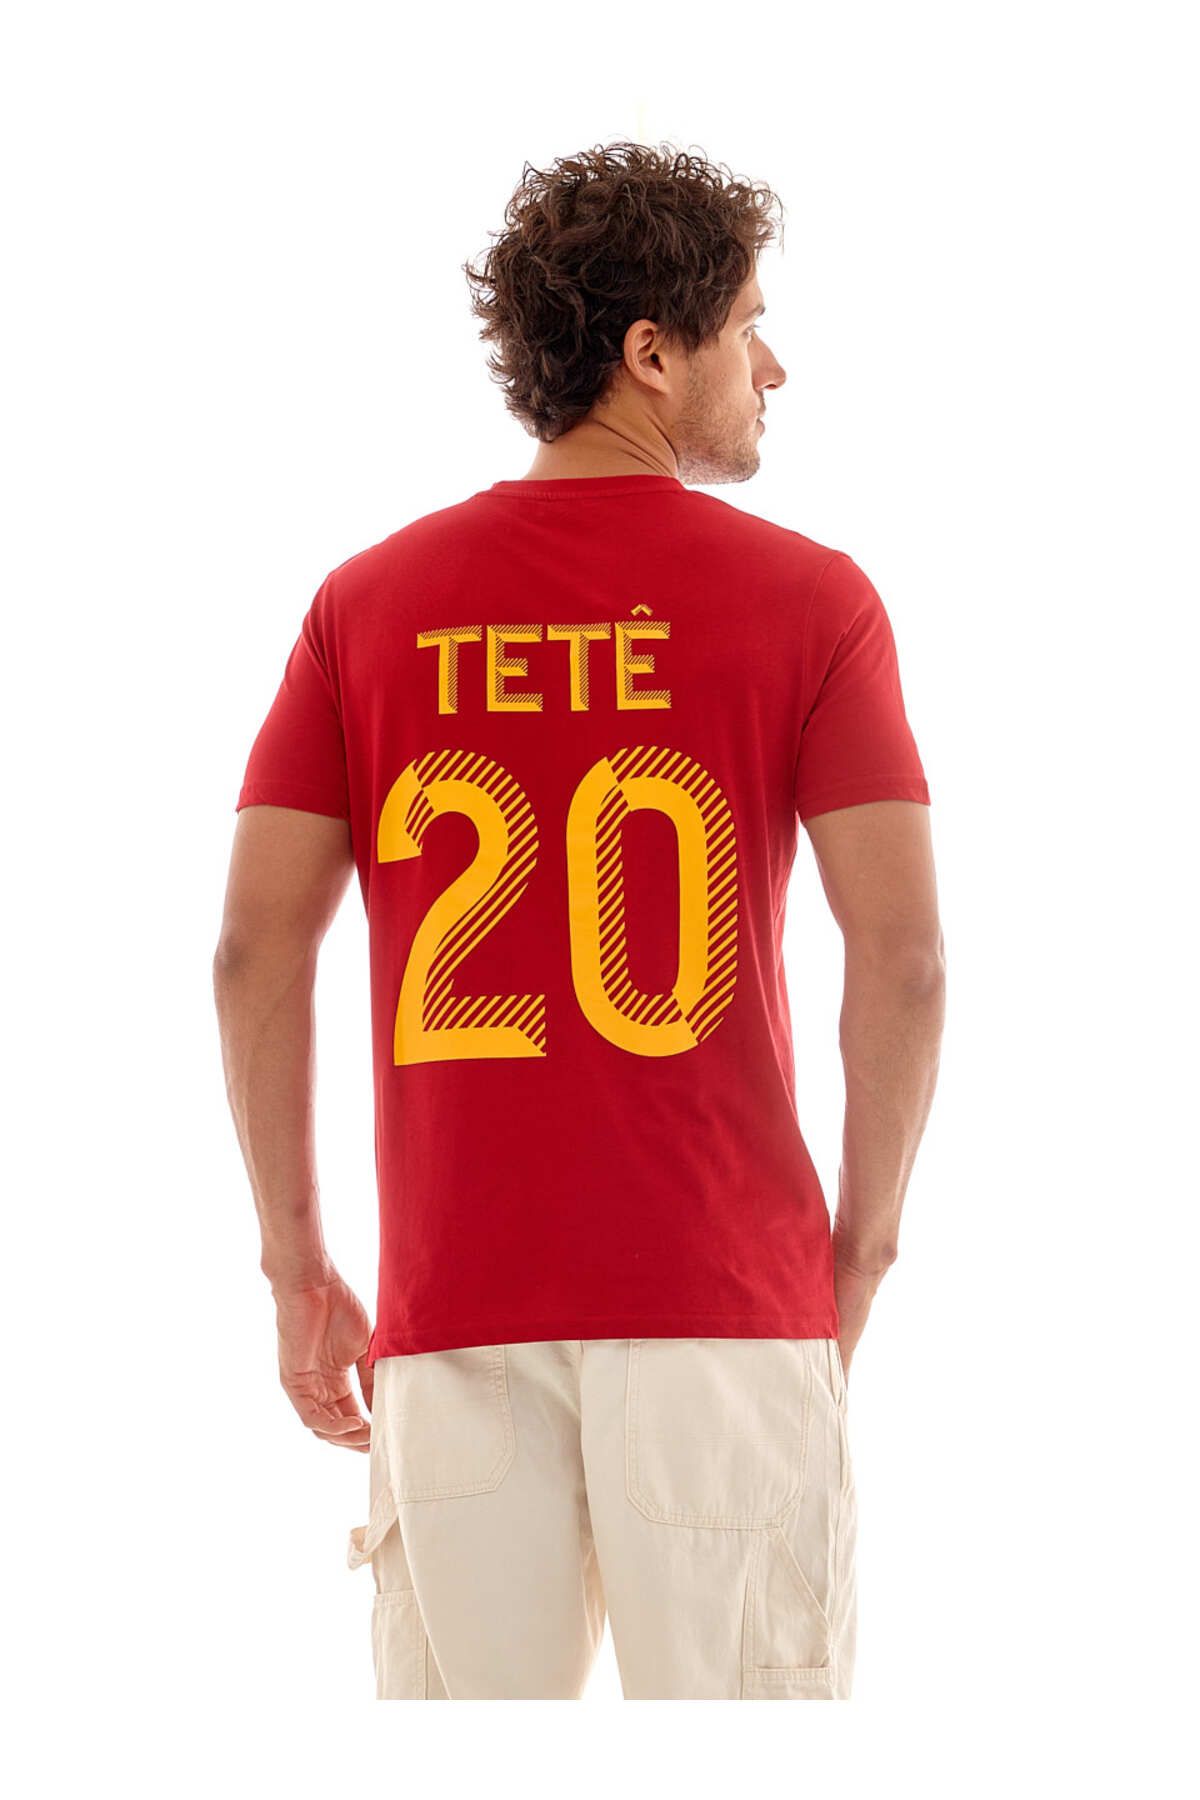 Galatasaray Galatasaray Tete T-shirt E231389